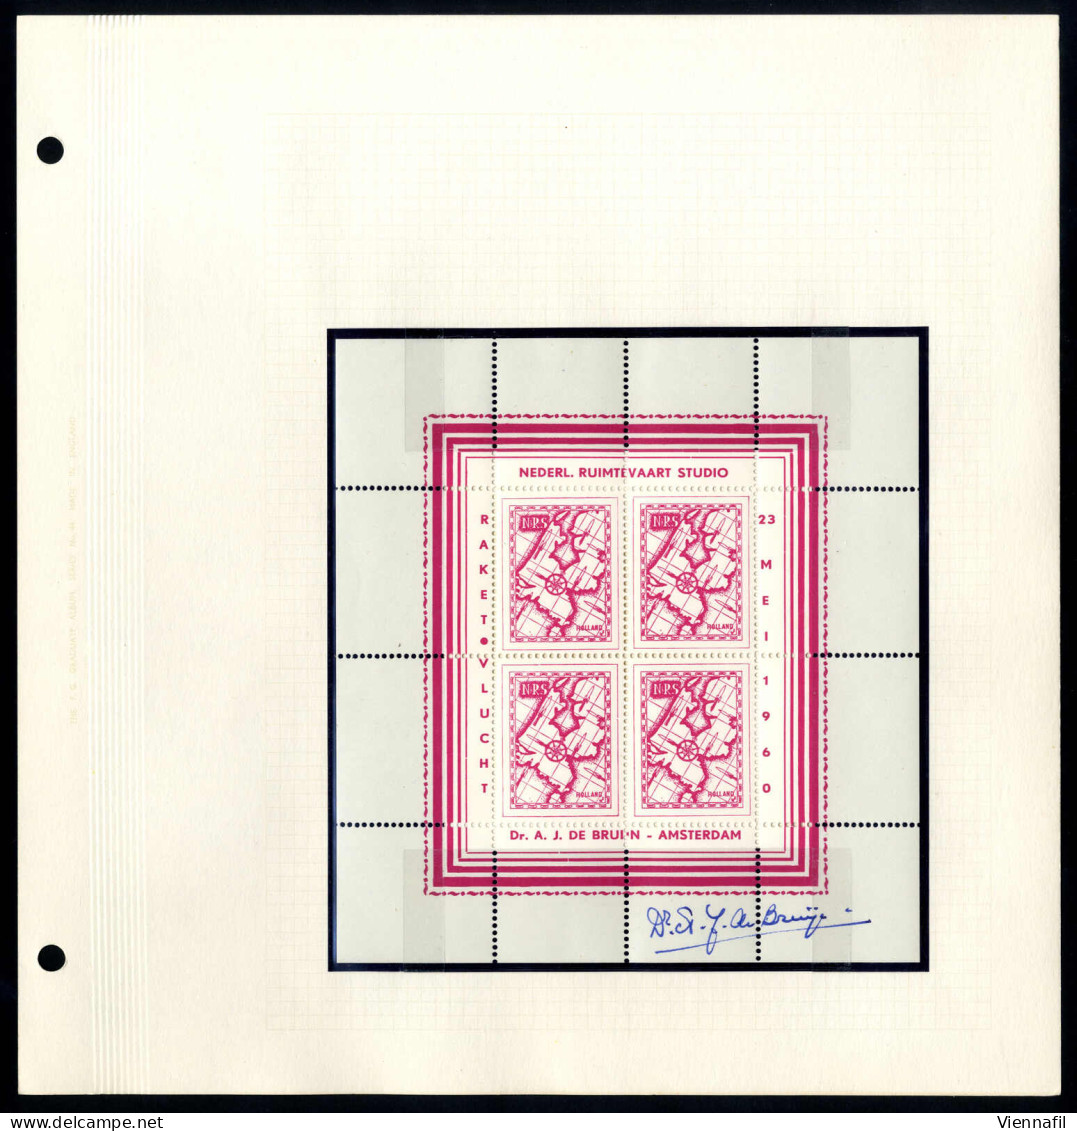 **/cover 1935/1960, 14 Kleinbögen zu je 4 Raketenpostmarken postfrisch, dazu 6 Briefe, teils signiert Adam de Brujn, daz